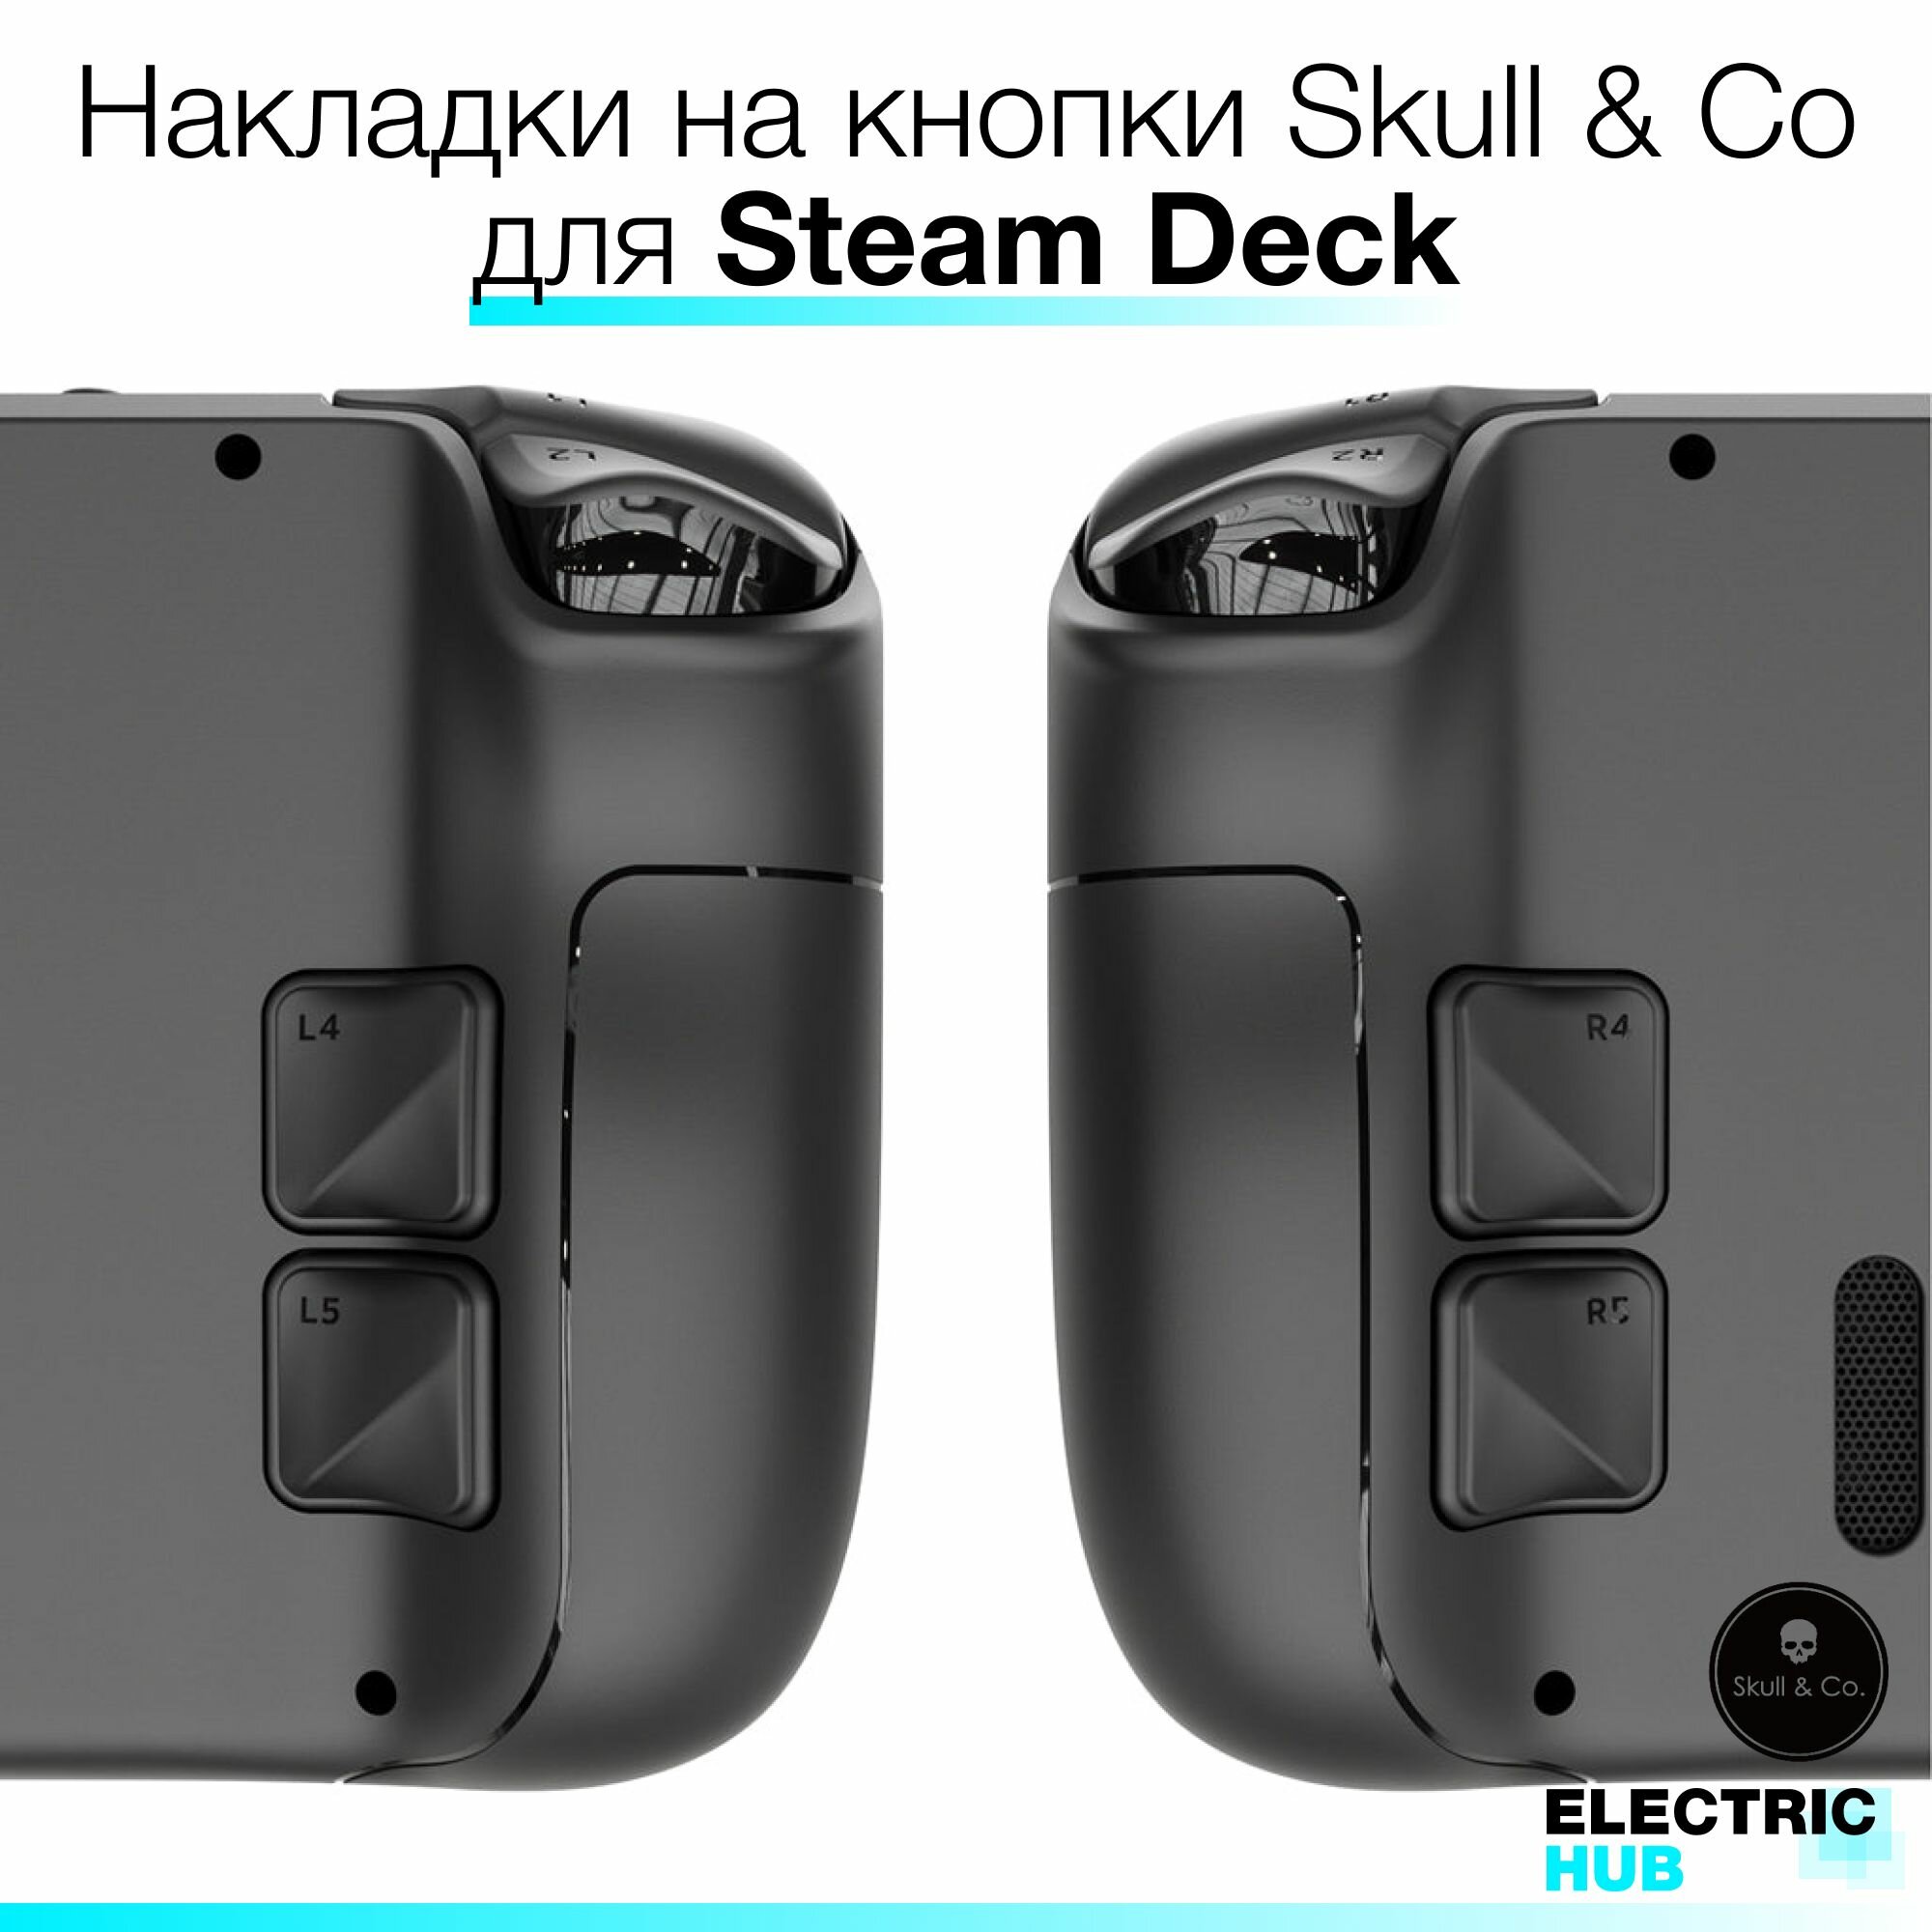 Премиум накладки на кнопки Skull & Co для Steam Deck/OLED комплект из 4 штук цвет Черный (Black)